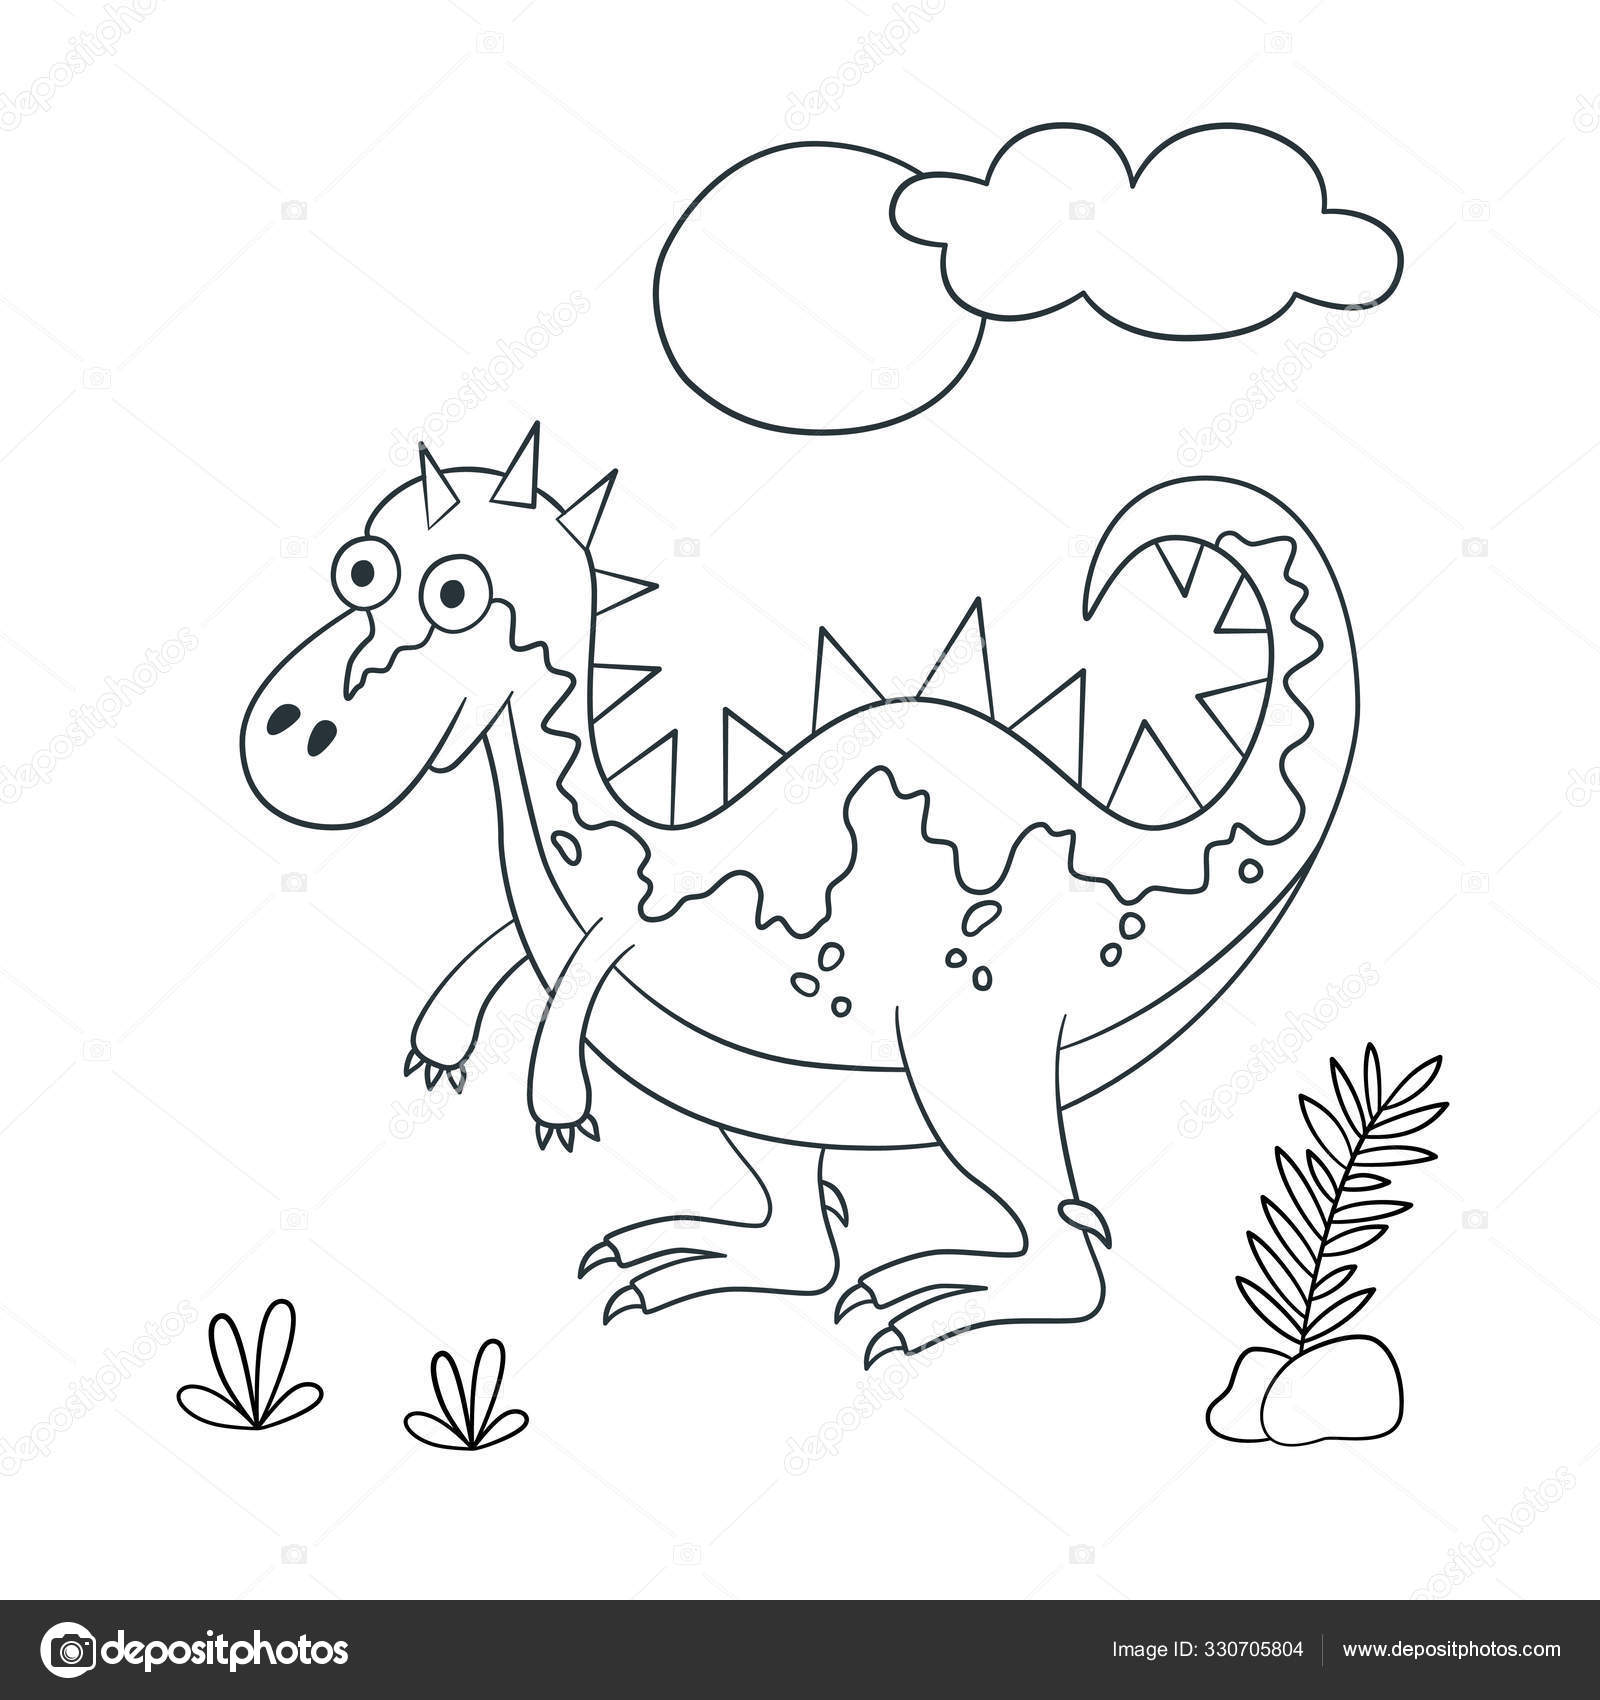 Desenho de contorno preto do dinossauro rex sobre fundo branco para colorir